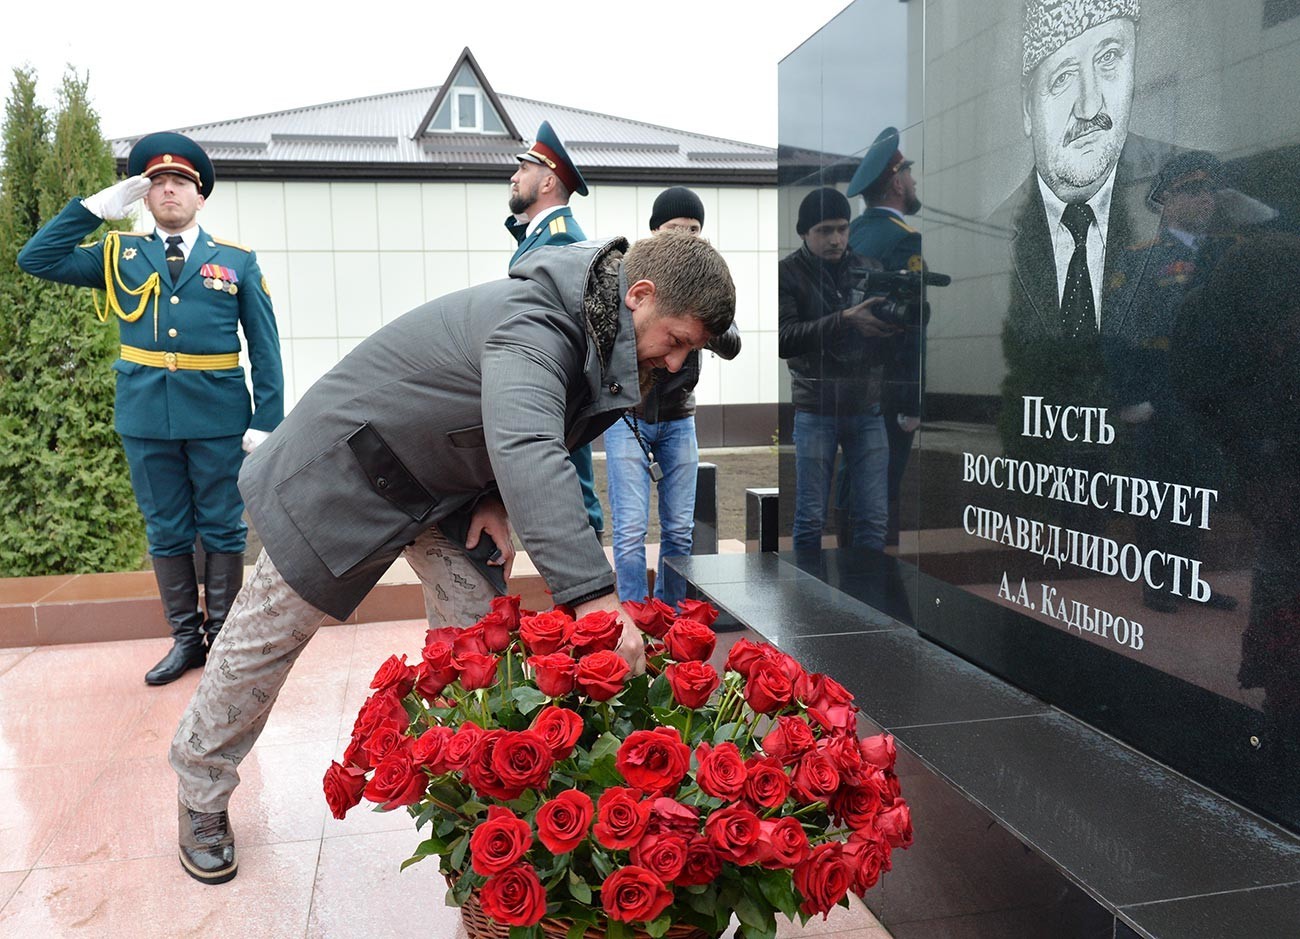 Čečenski predsednik Ramzan Kadirov med spominsko slovesnostjo za njegovega očeta.
